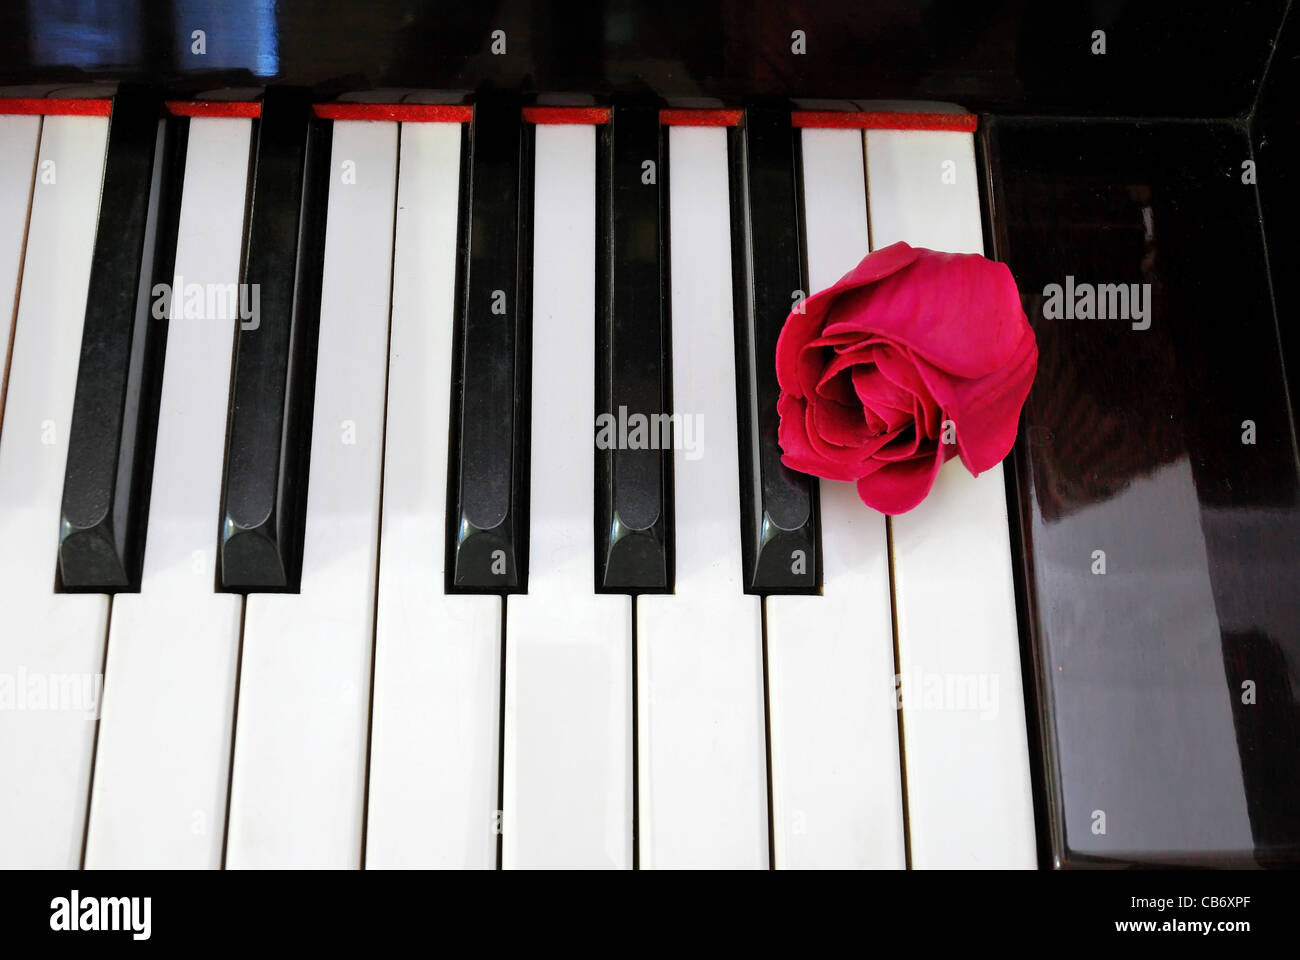 Draufsicht der Rose am Klavier-Tastatur. Für die Liebe zur Musik,  Kreativität und Liebe und Romantik Konzepte Stockfotografie - Alamy